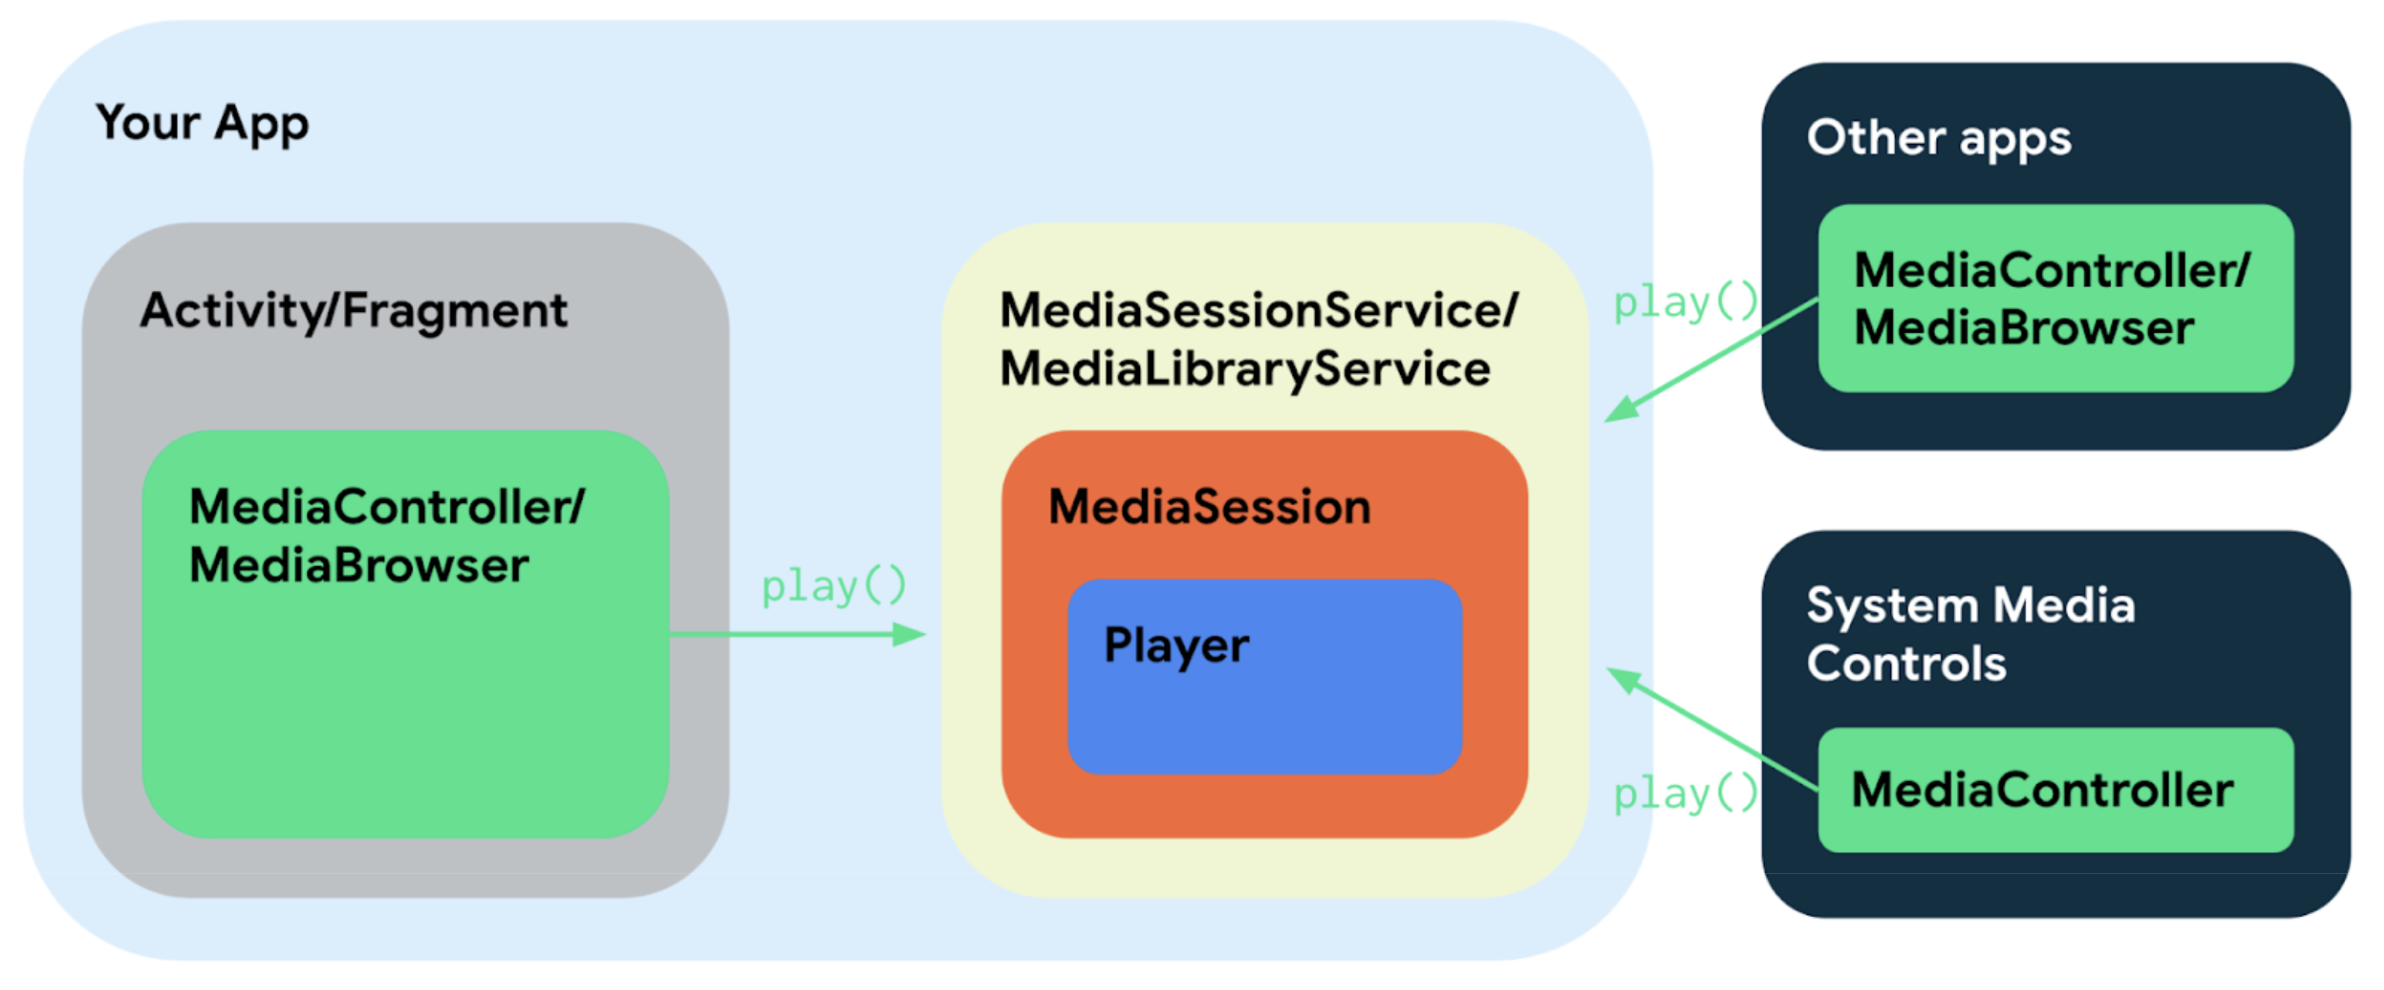 Diagrama de componentes do app com serviços, atividades e apps externos.